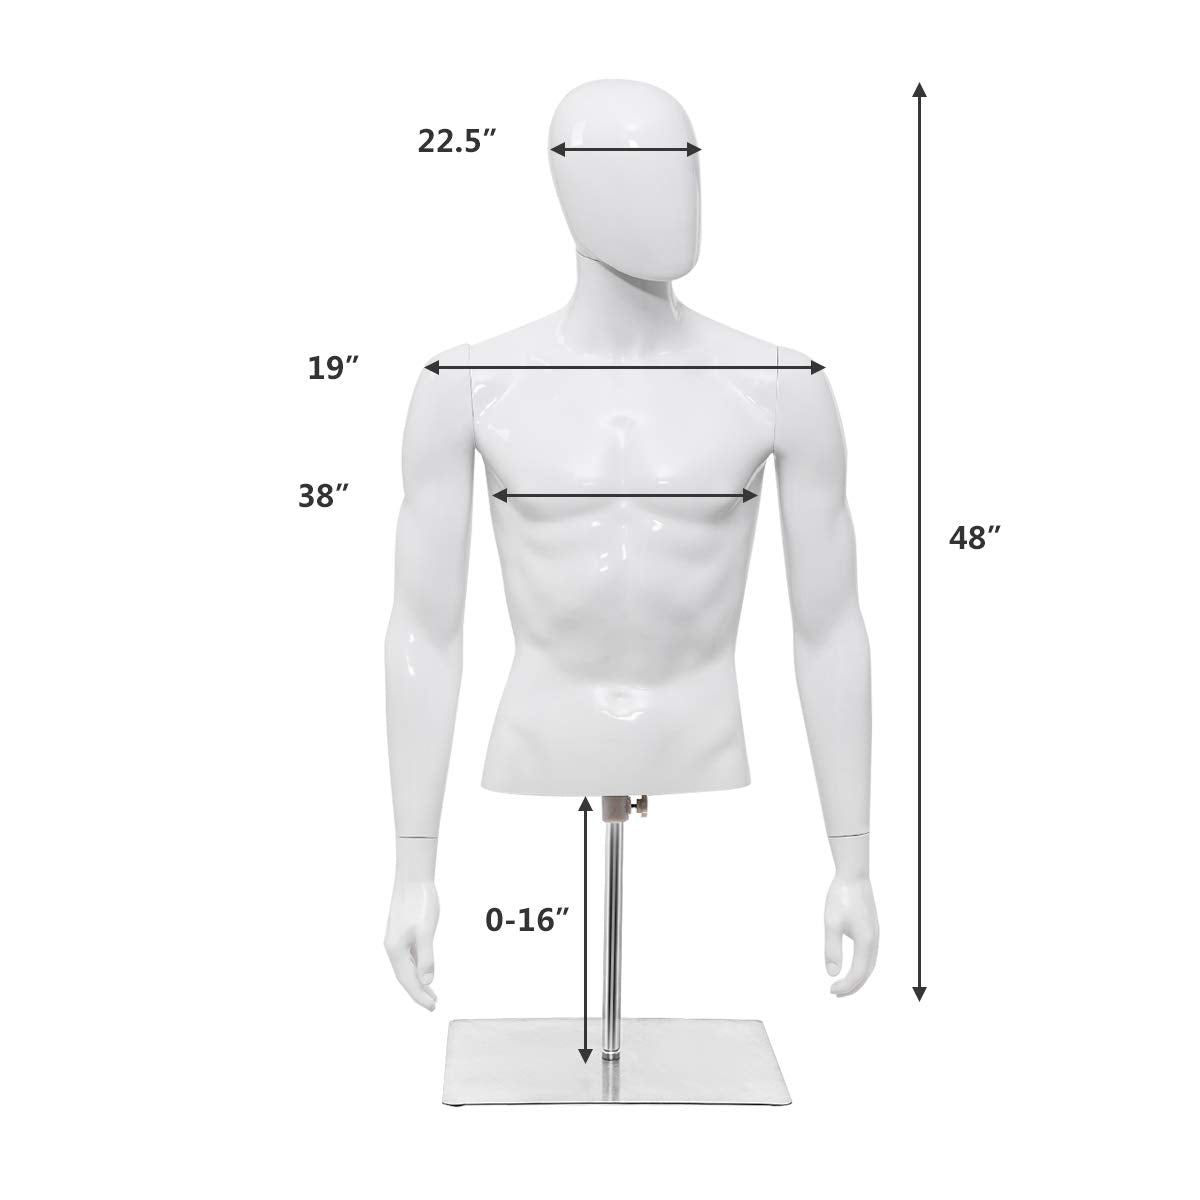 Giantex Male Mannequin Torso Adjustable Height